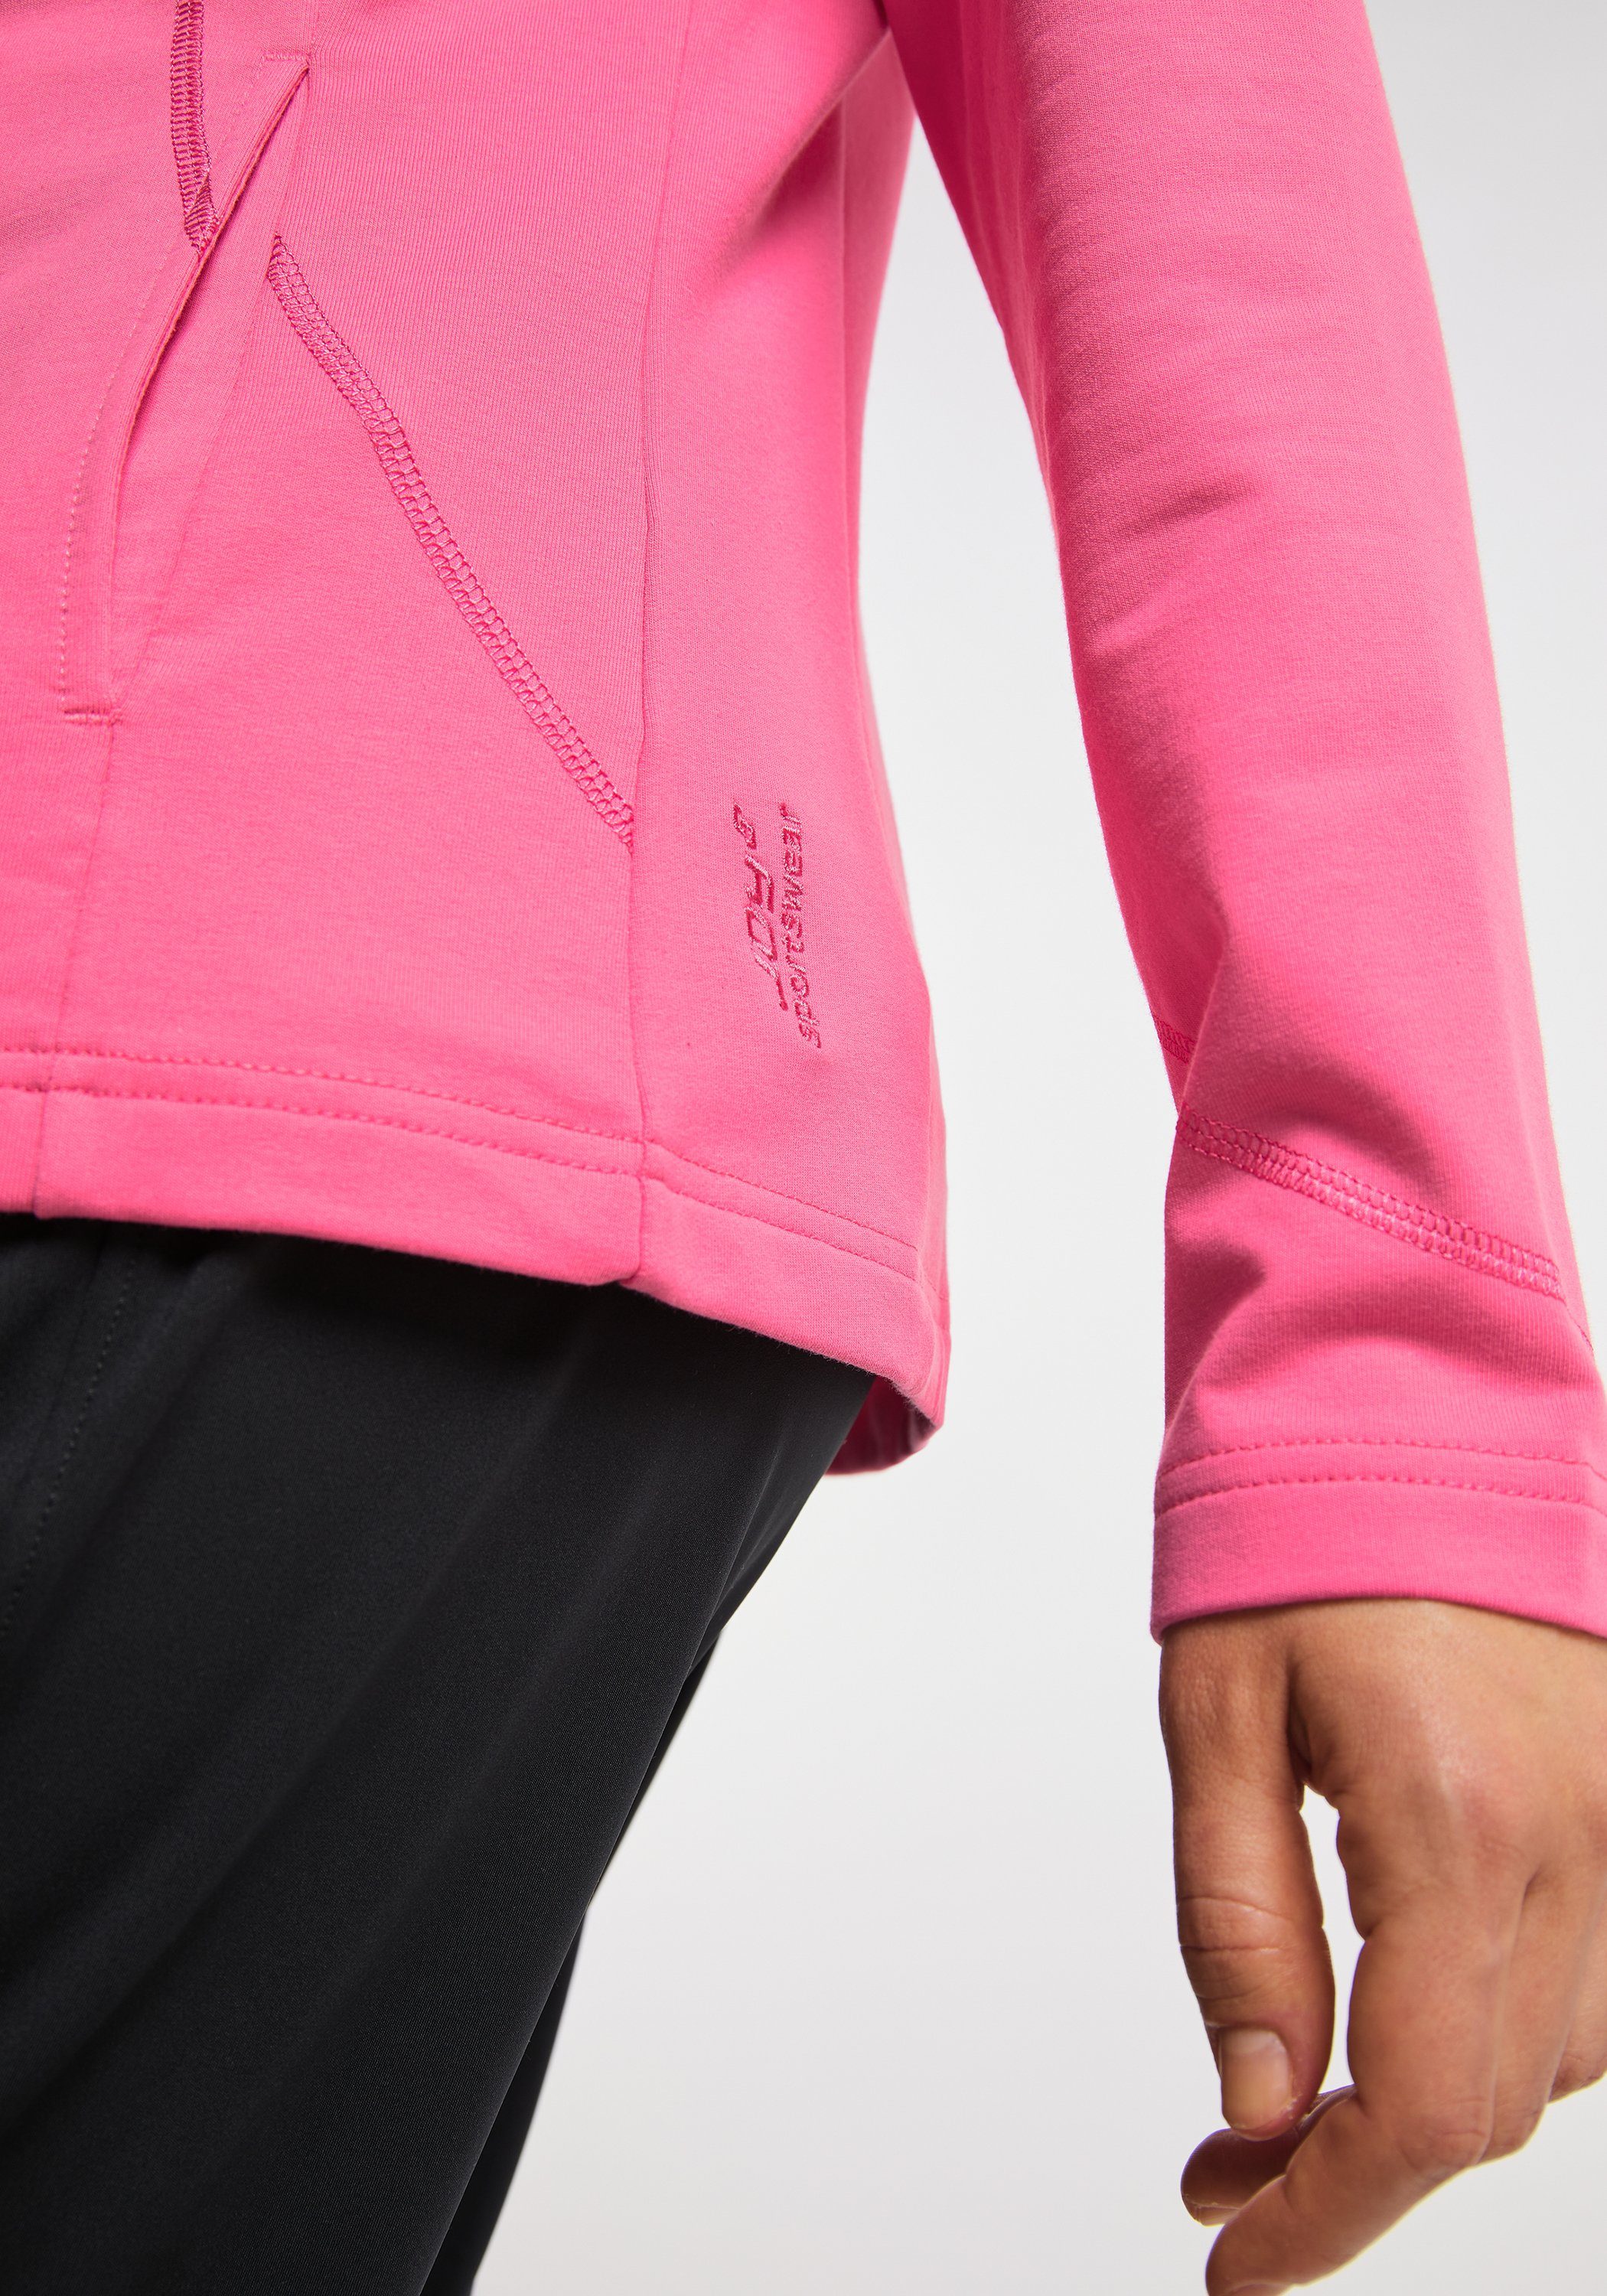 DORIT pink Joy Trainingsjacke camelia Sportswear Jacke